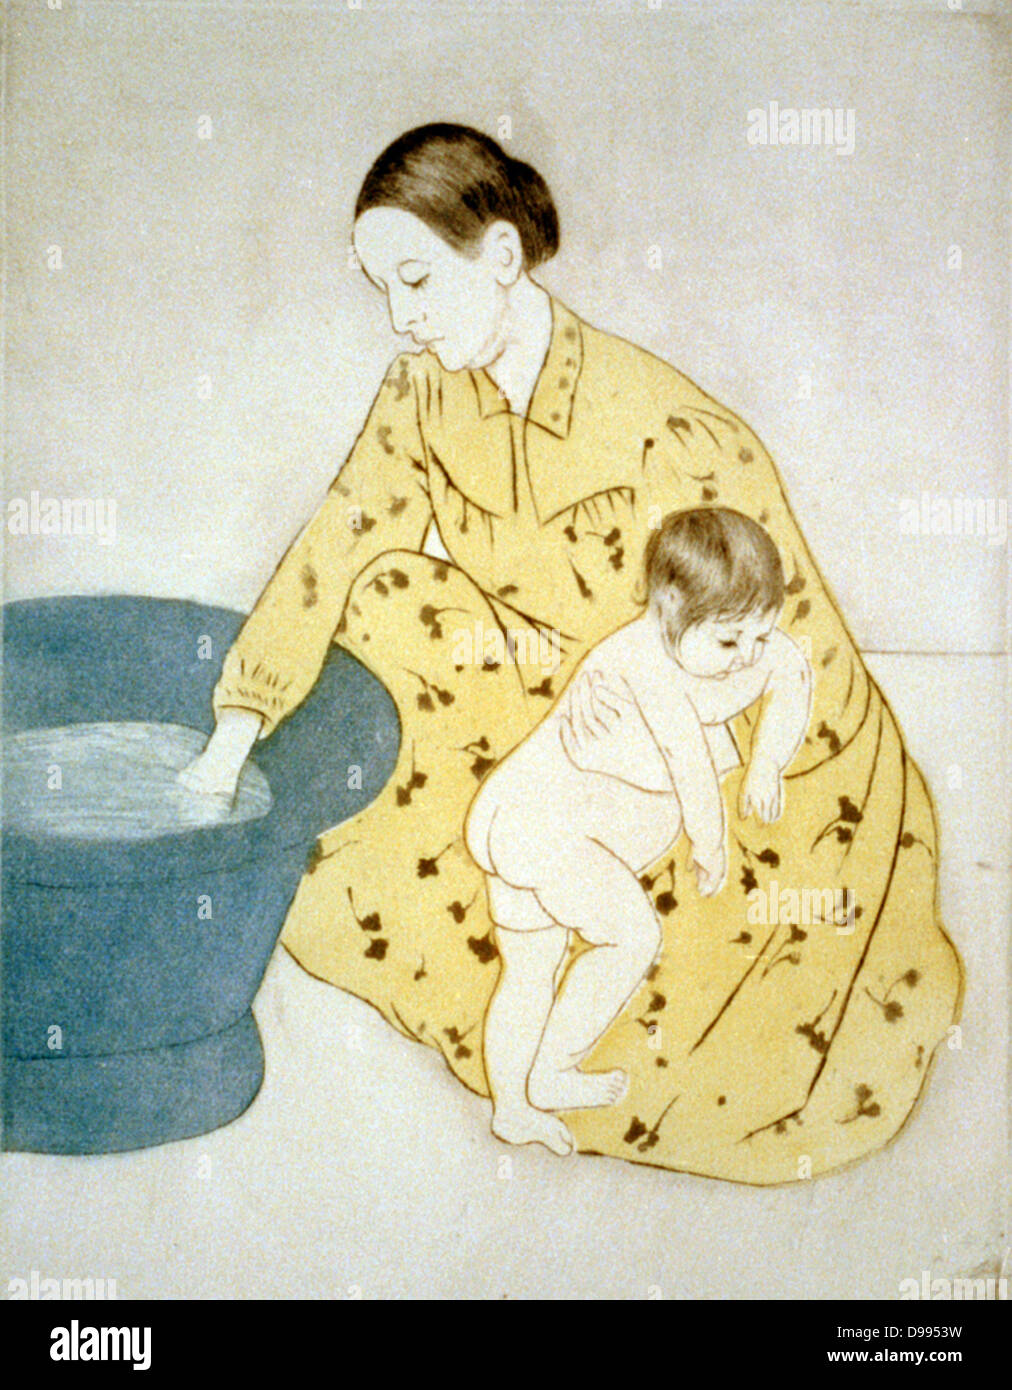 La baignoire',1891. Pointe sèche et aquatinte, imprimées en couleur. Mary Cassatt (1844-1926) artiste américain, à partir de 1866 vivaient principalement en France. Test de température mère baignoire pour bébé qu'elle détient. Influencé par les gravures japonaises. Banque D'Images